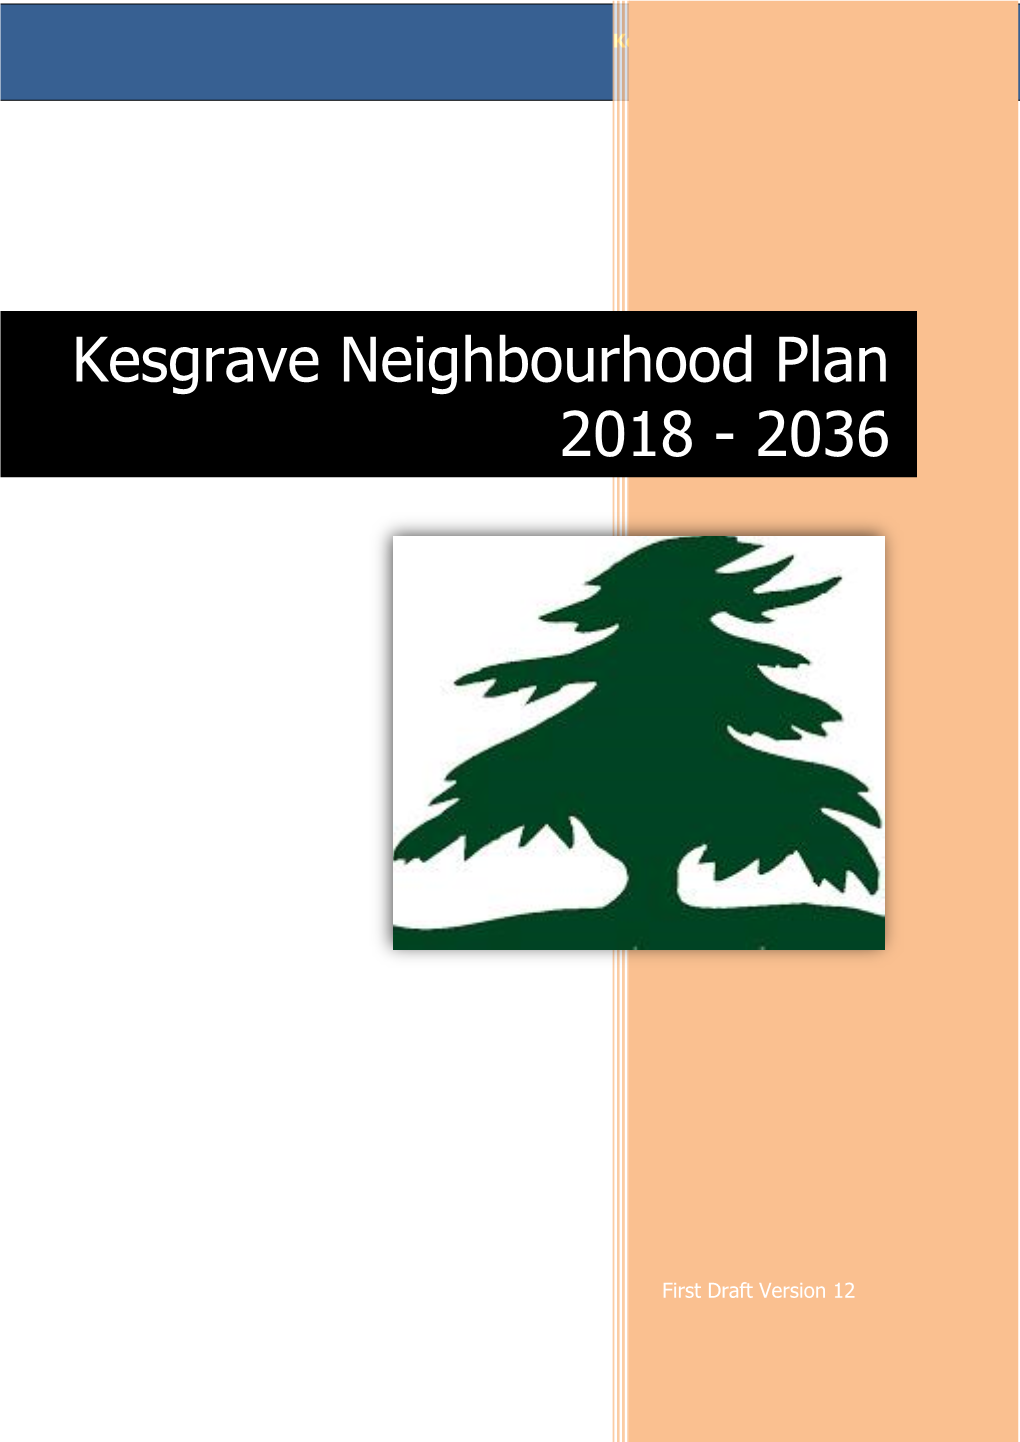 Kesgrave Neighbourhood Plan 2018-36 First Draft Version 12 – 27/6/19